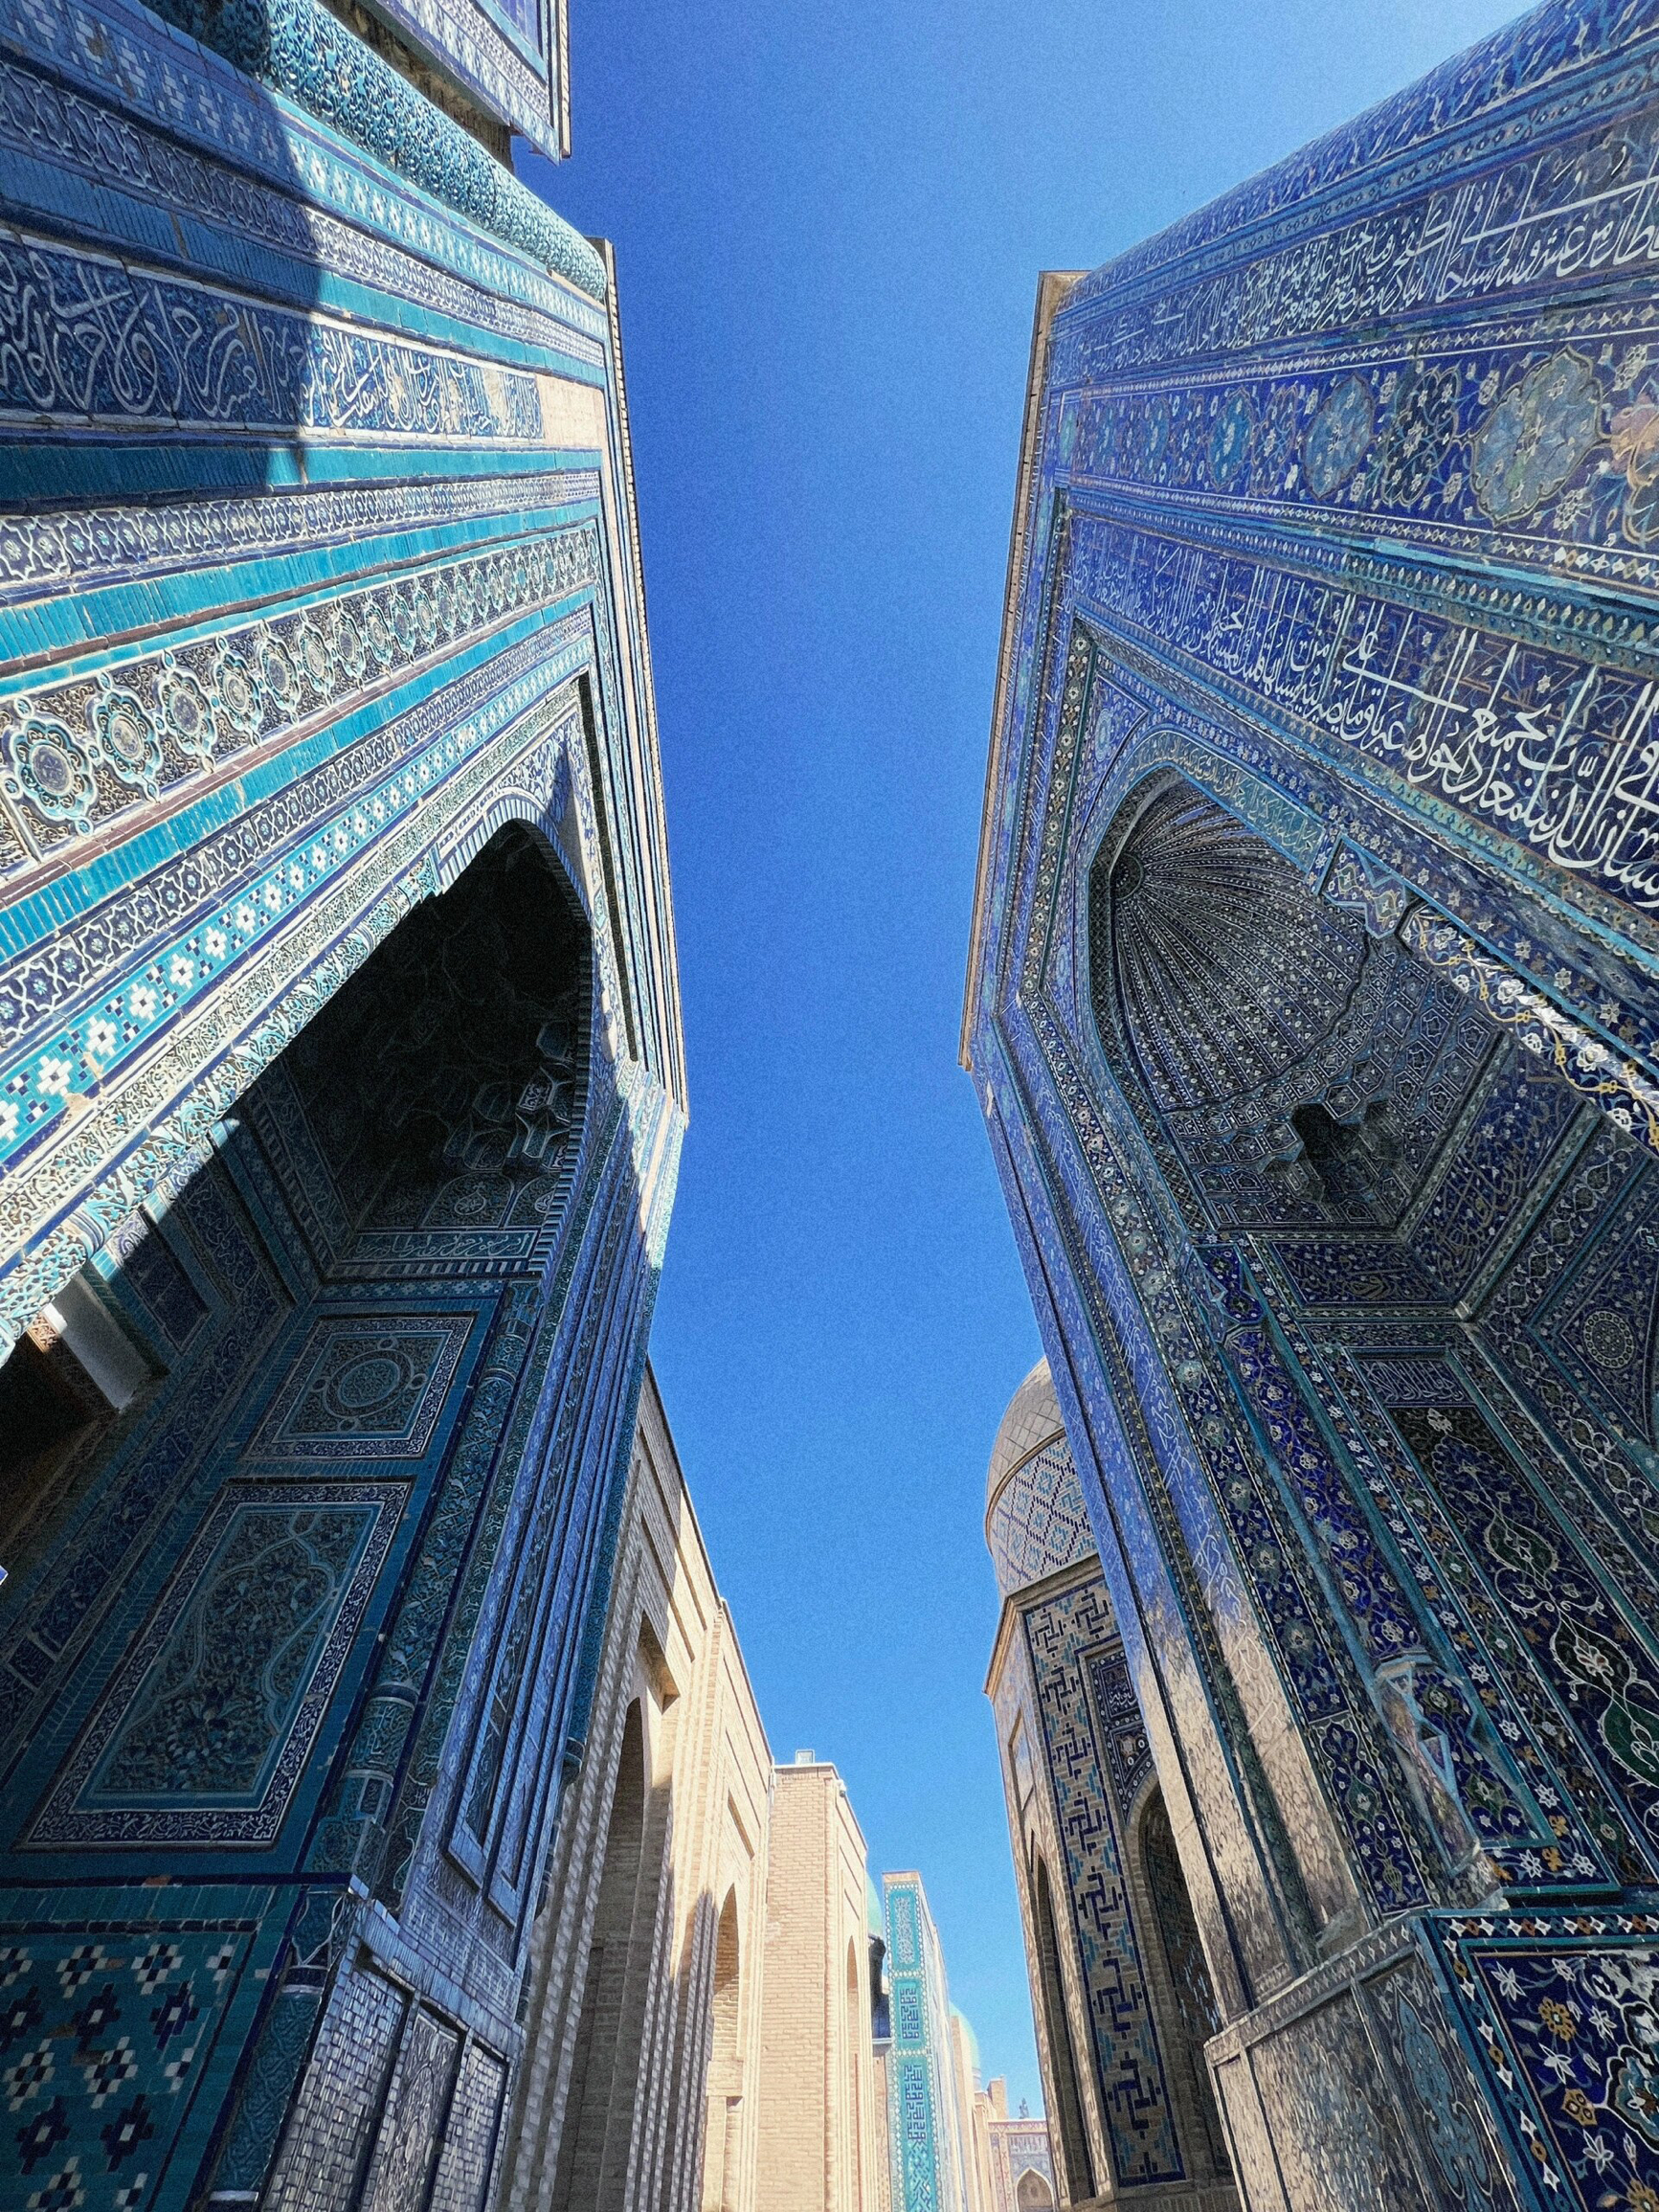 🕌【撒马尔罕——丝绸之路上的蓝色瑰宝】🇺🇿  撒马尔罕，这座位于乌兹别克斯坦的古城，以其华丽的蓝色陶